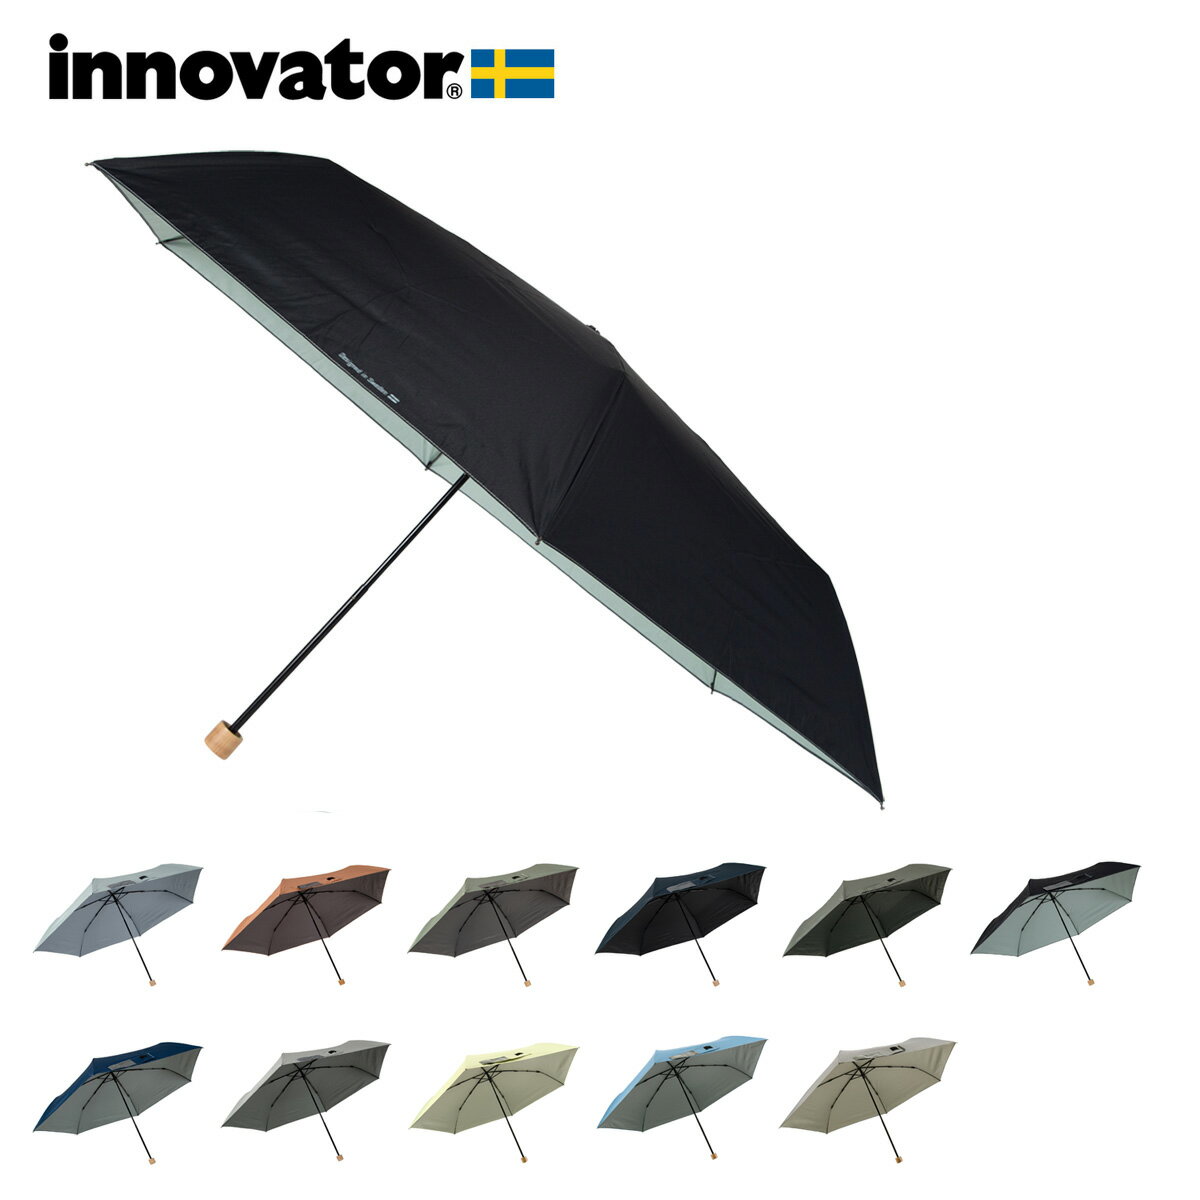 イノベーター 折りたたみ傘 60cm 晴雨兼用ワイド 雨傘 日傘 手開き UVカット IN-60M innovator 撥水 遮光率99%以上 コロナ対策 北欧 おしゃれ[PO10][即日発送]